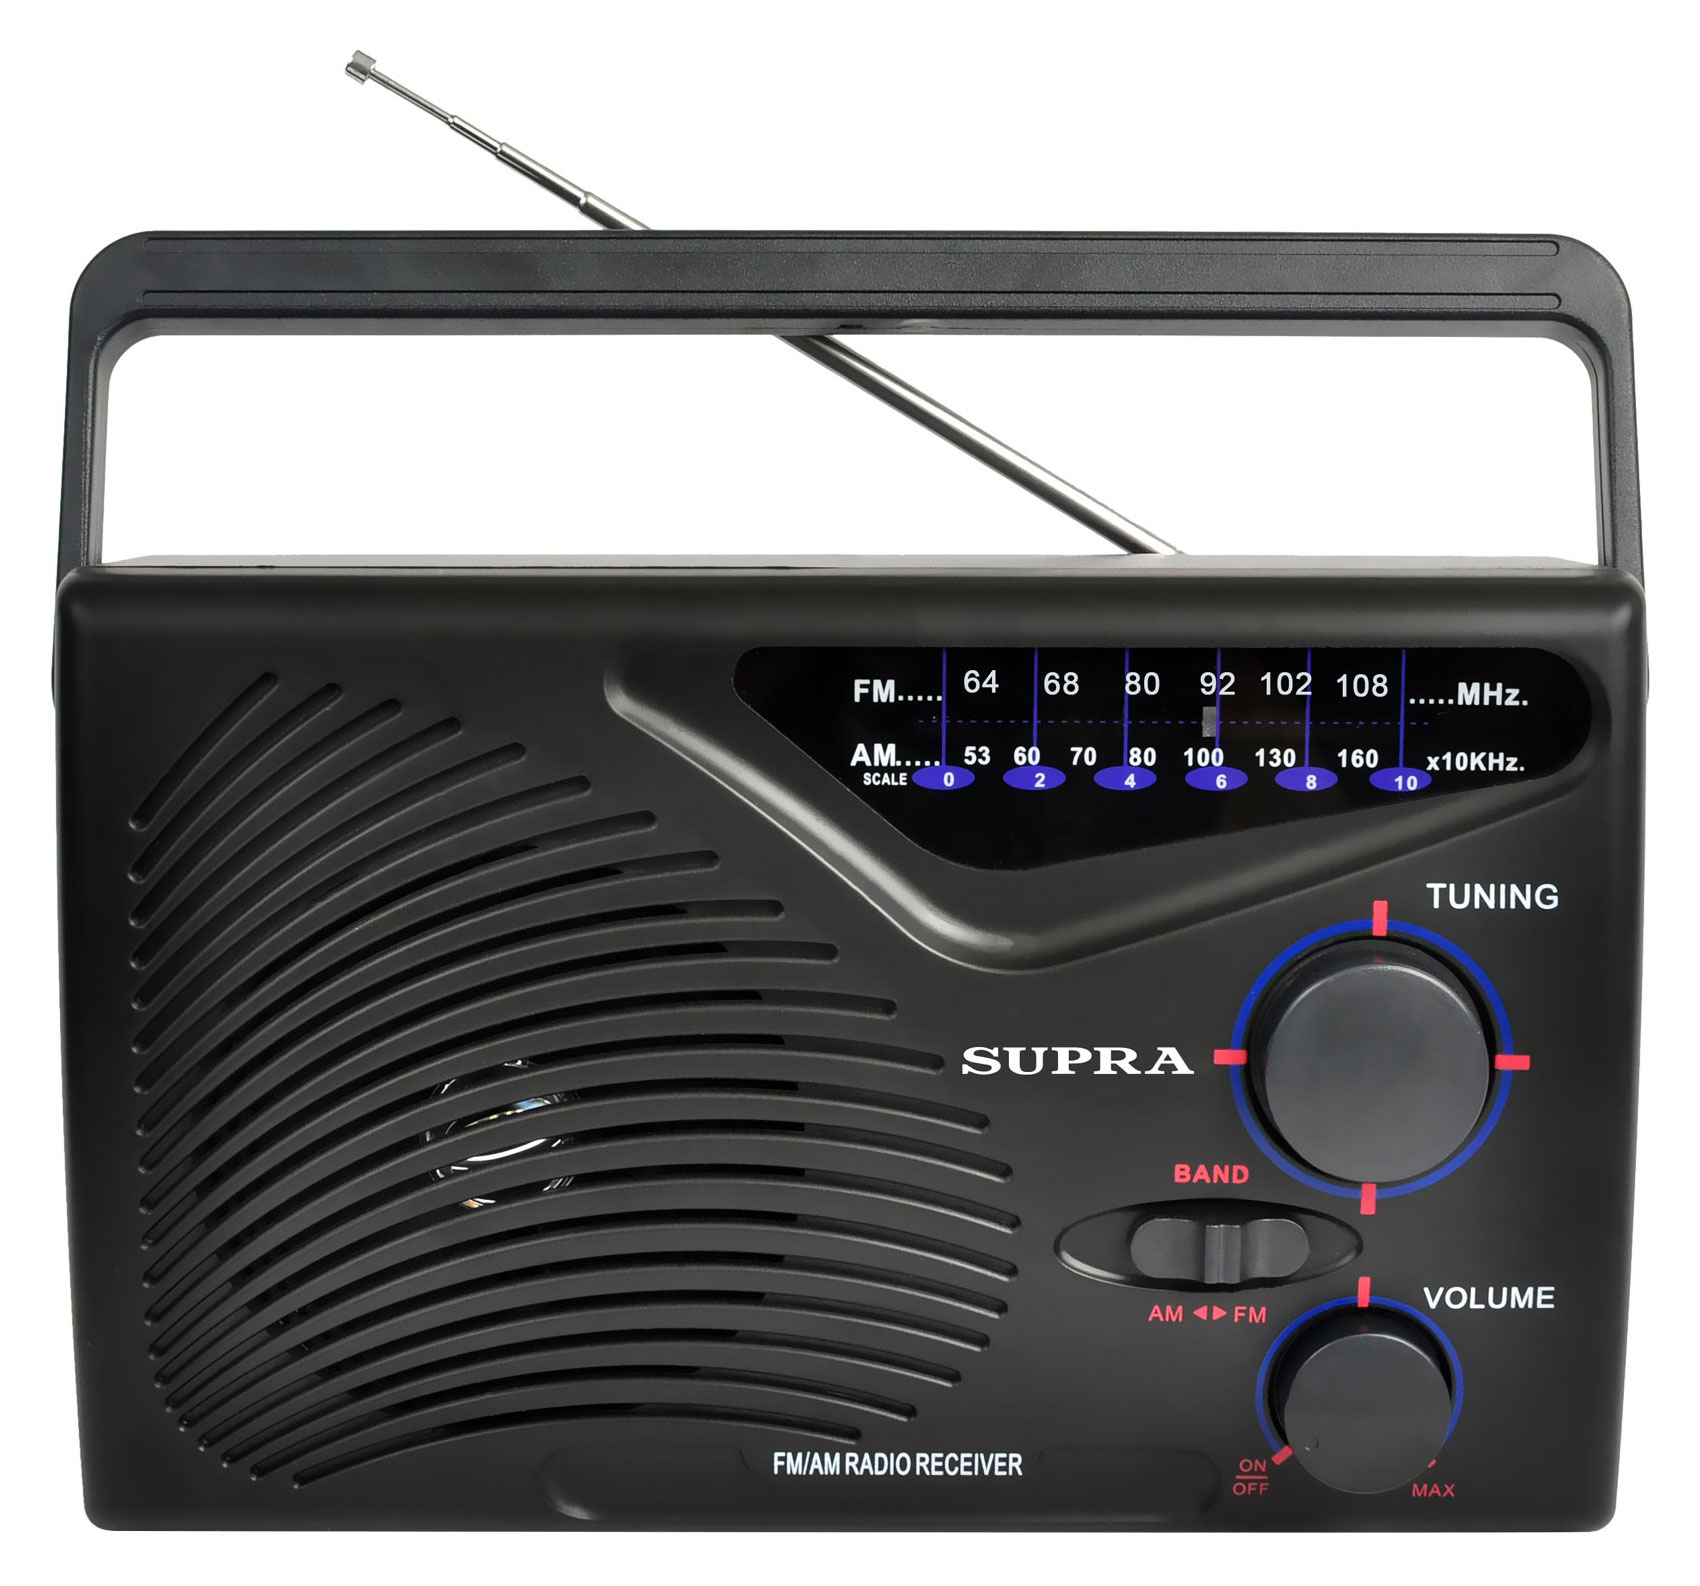 Картинка Радиоприемник SUPRA ST-16 по разумной цене купить в интернет магазине mall.su